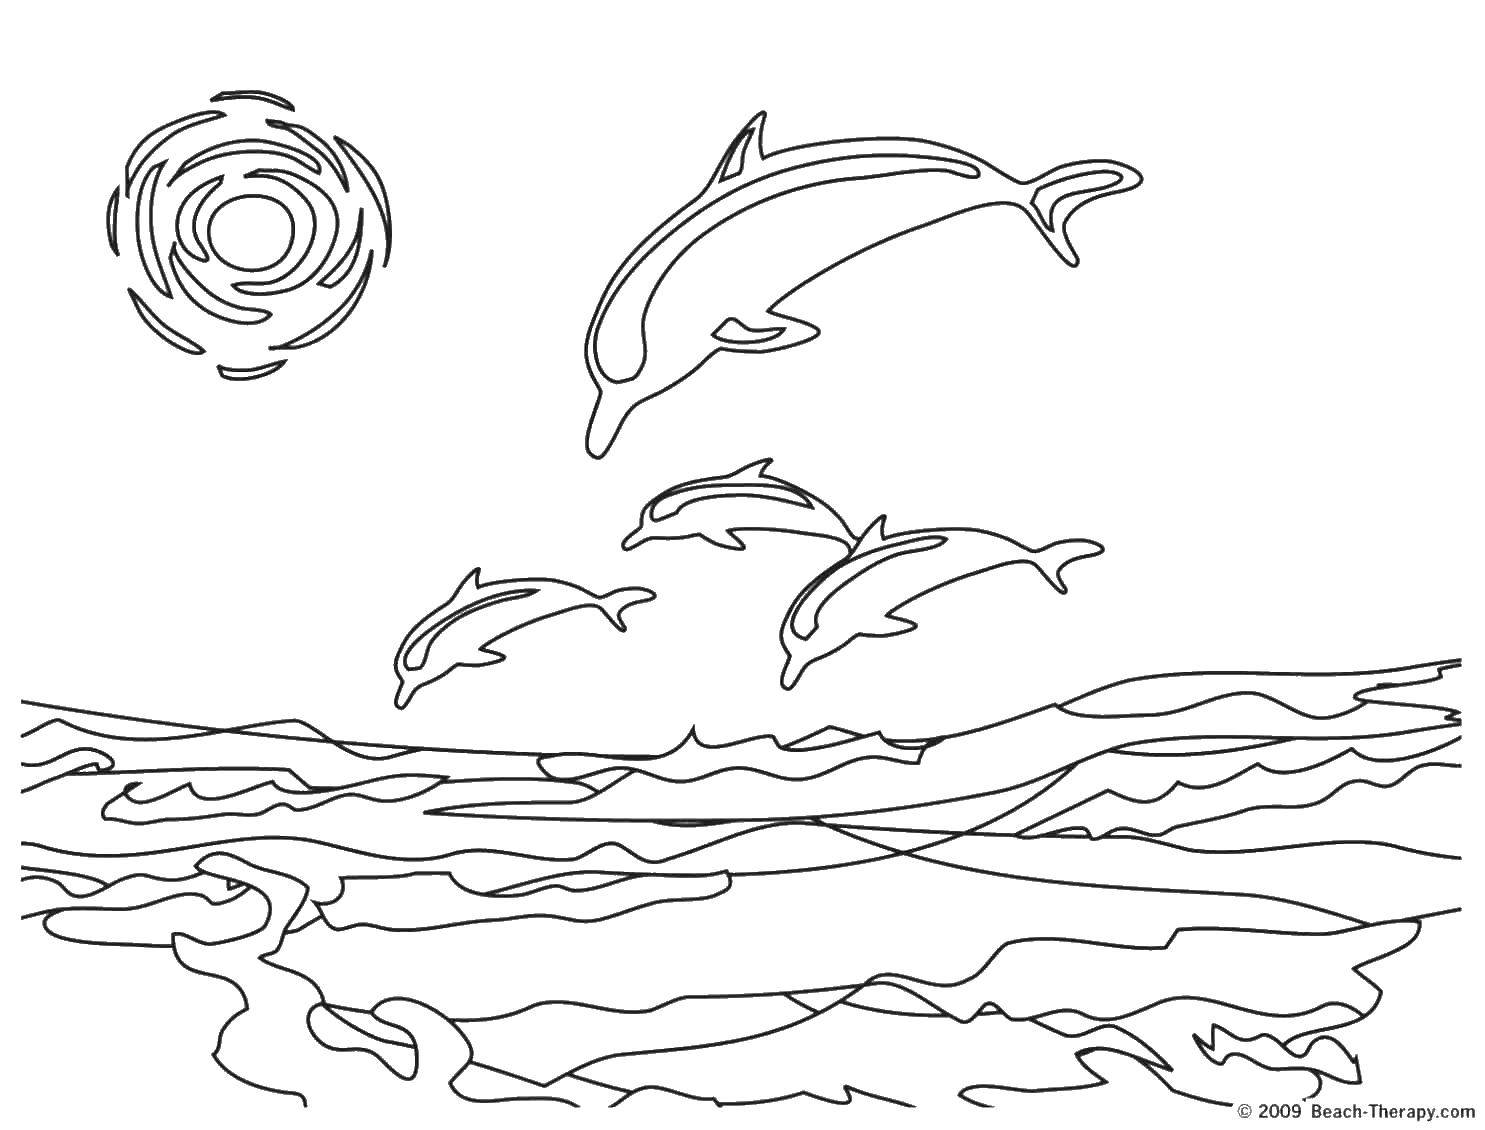 Опис: розмальовки  Зграя дельфінів. Категорія: морське. Теги:  Підводний світ, дельфін.